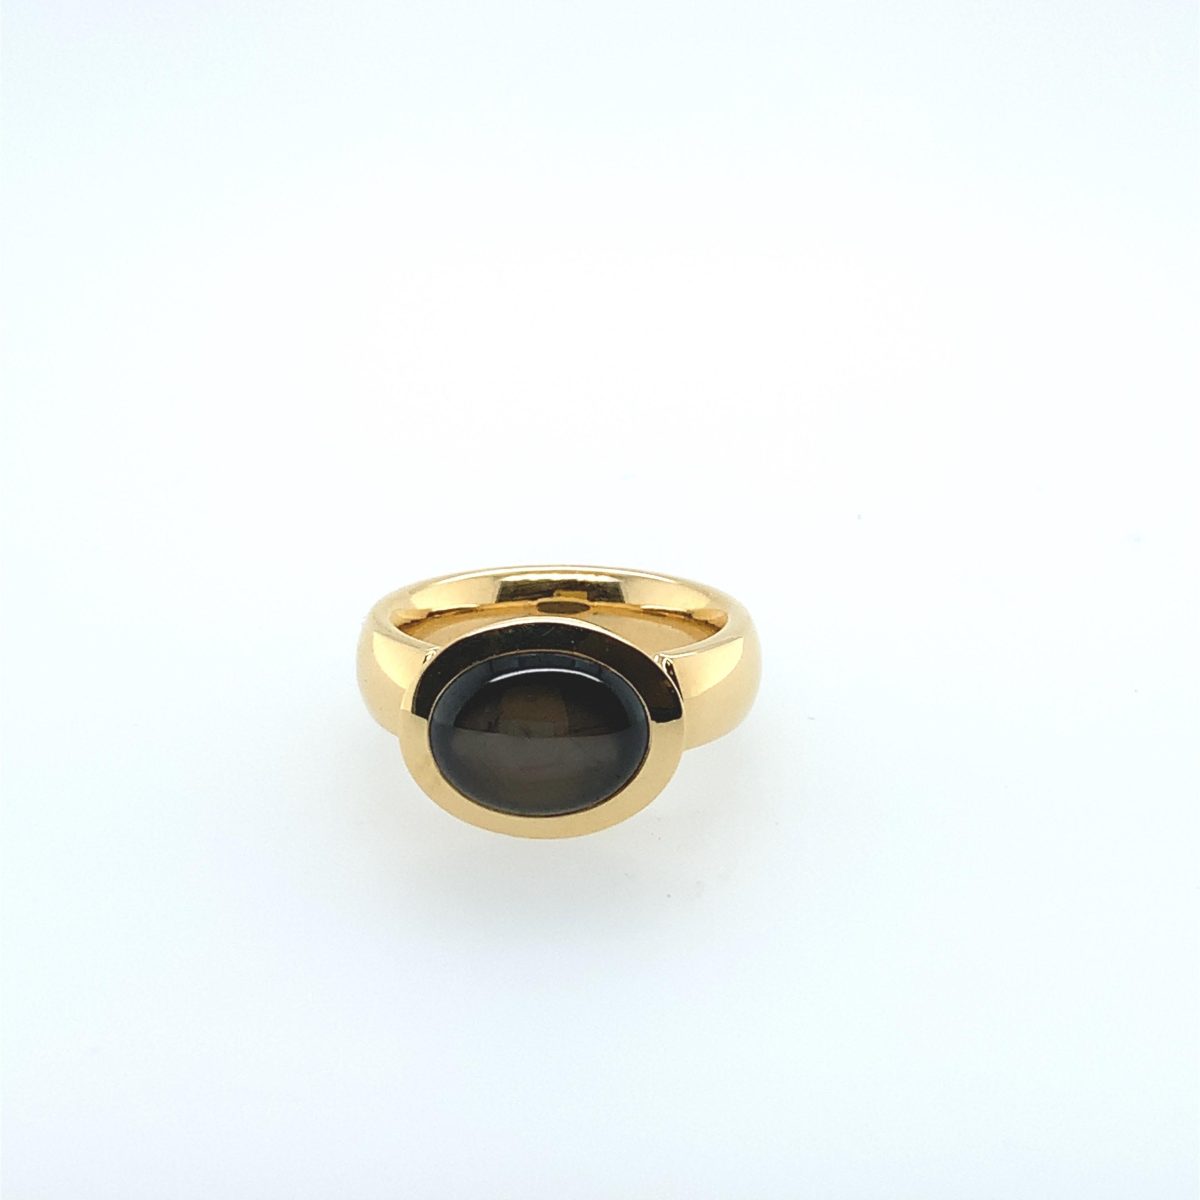 Ring Sternsaphir 18kt Gelbgold - GalerieVoigt - 423dare05-1